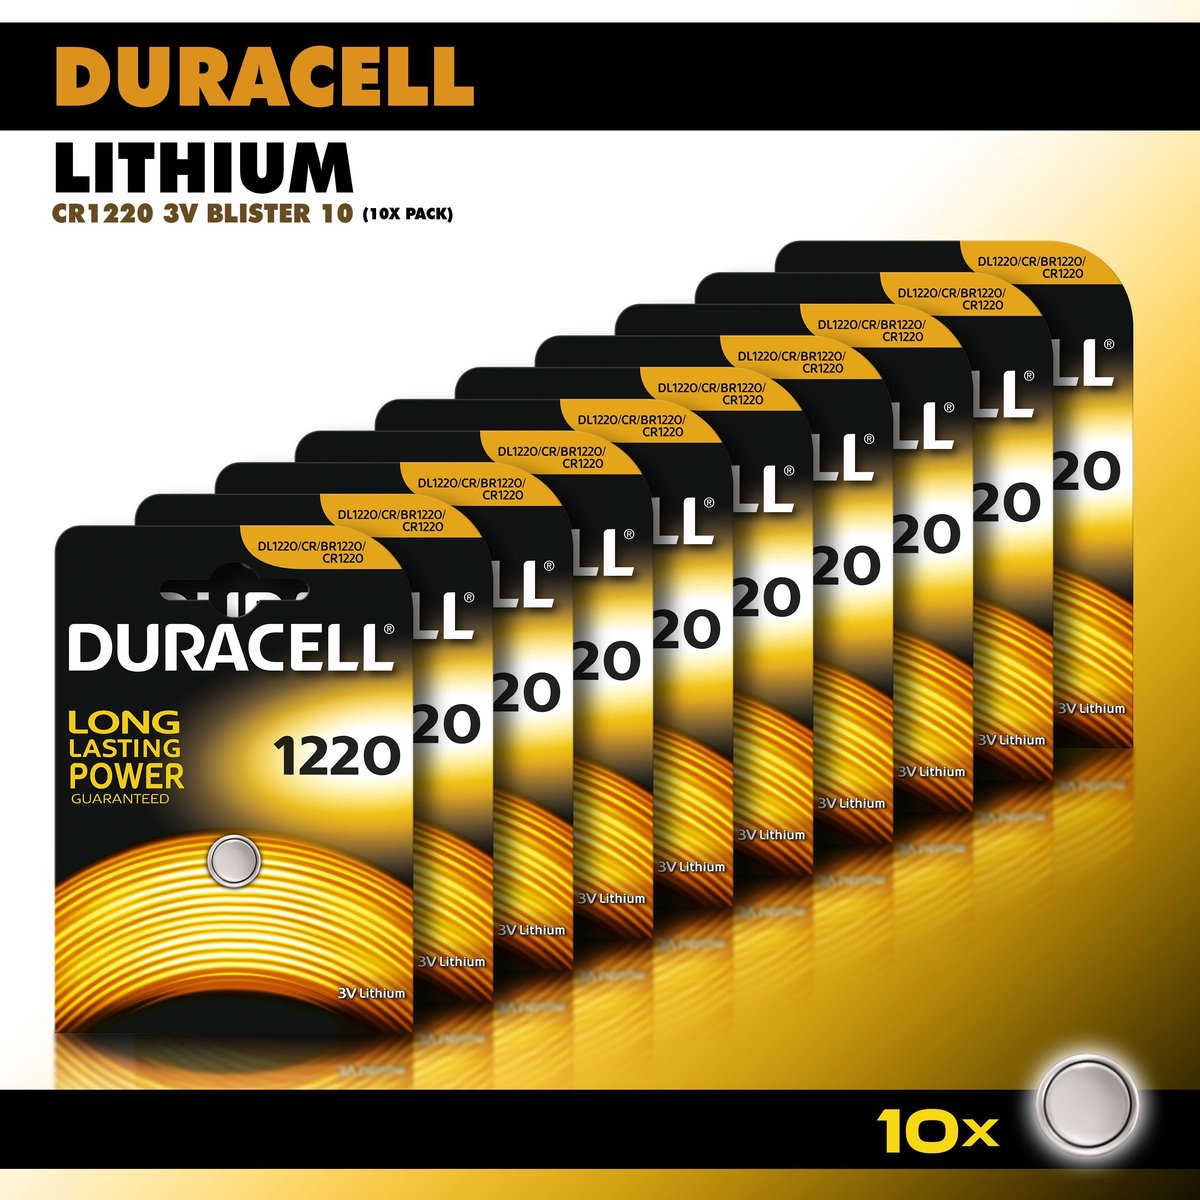 Duracell CR2450 Pile bouton au lithium - 3V - 1 pièce